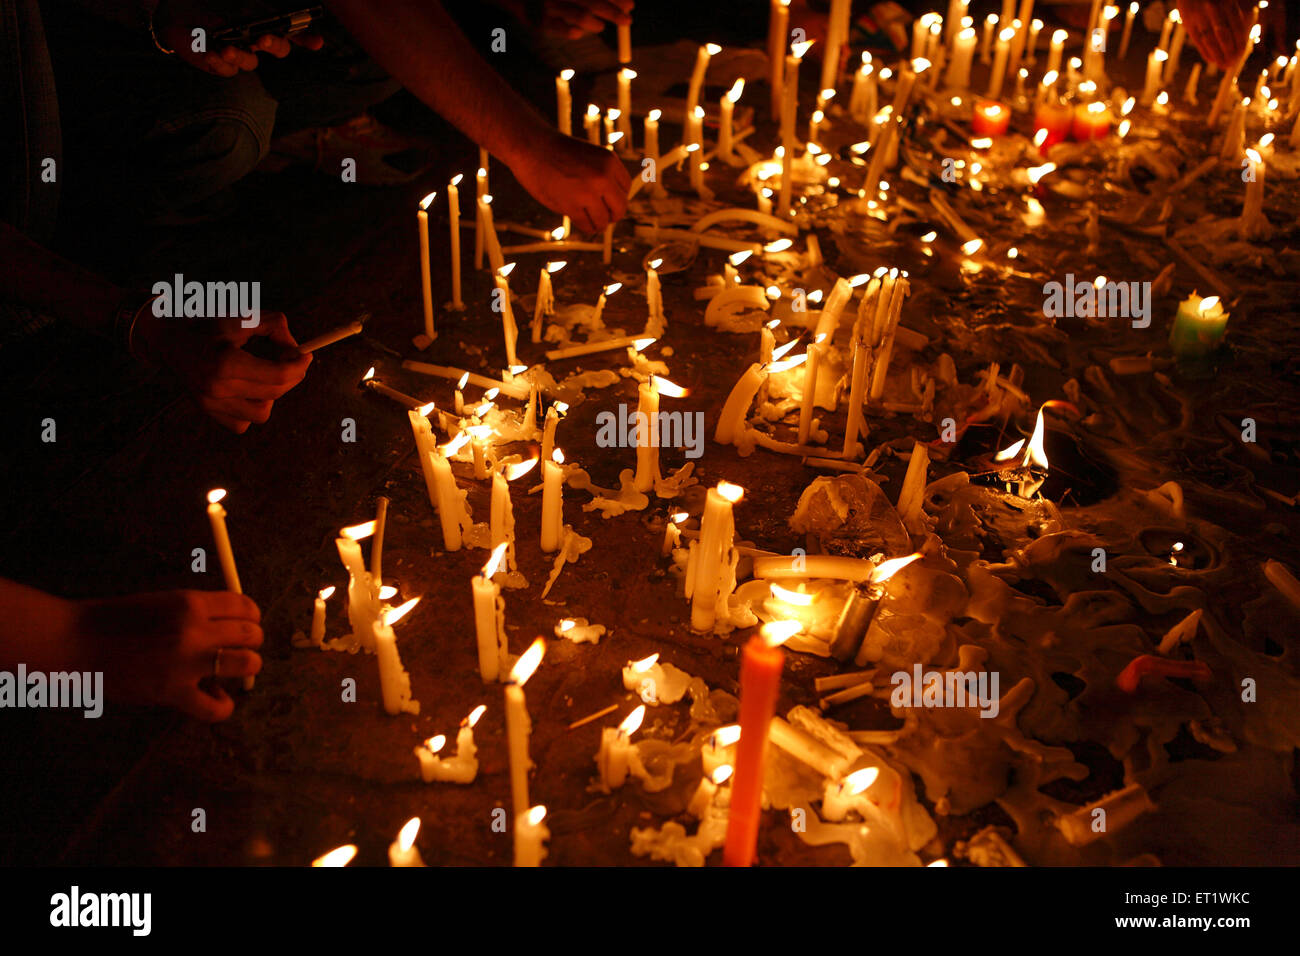 Bürger zünden Kerzen an und huldigen nach dem Terroranschlag von Deccan Mujahideen am 26. November 2008 in Mumbai, Indien Stockfoto